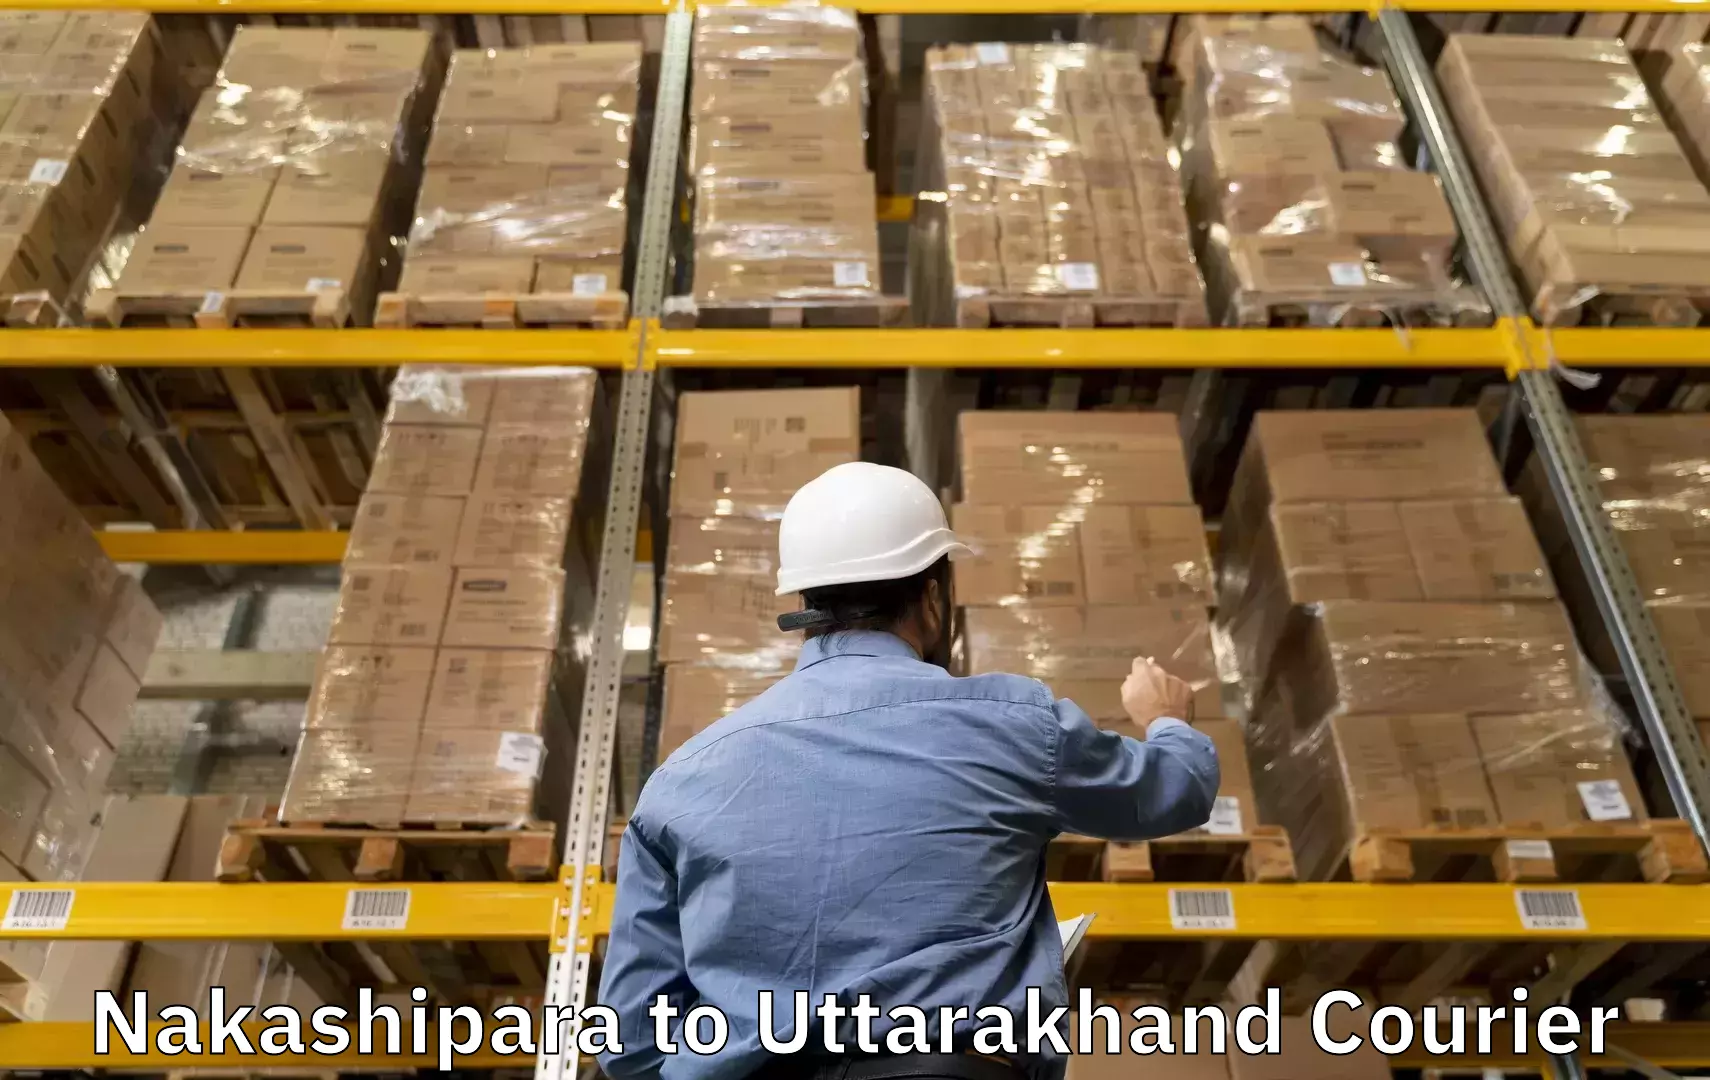 Luggage delivery system Nakashipara to Uttarakhand